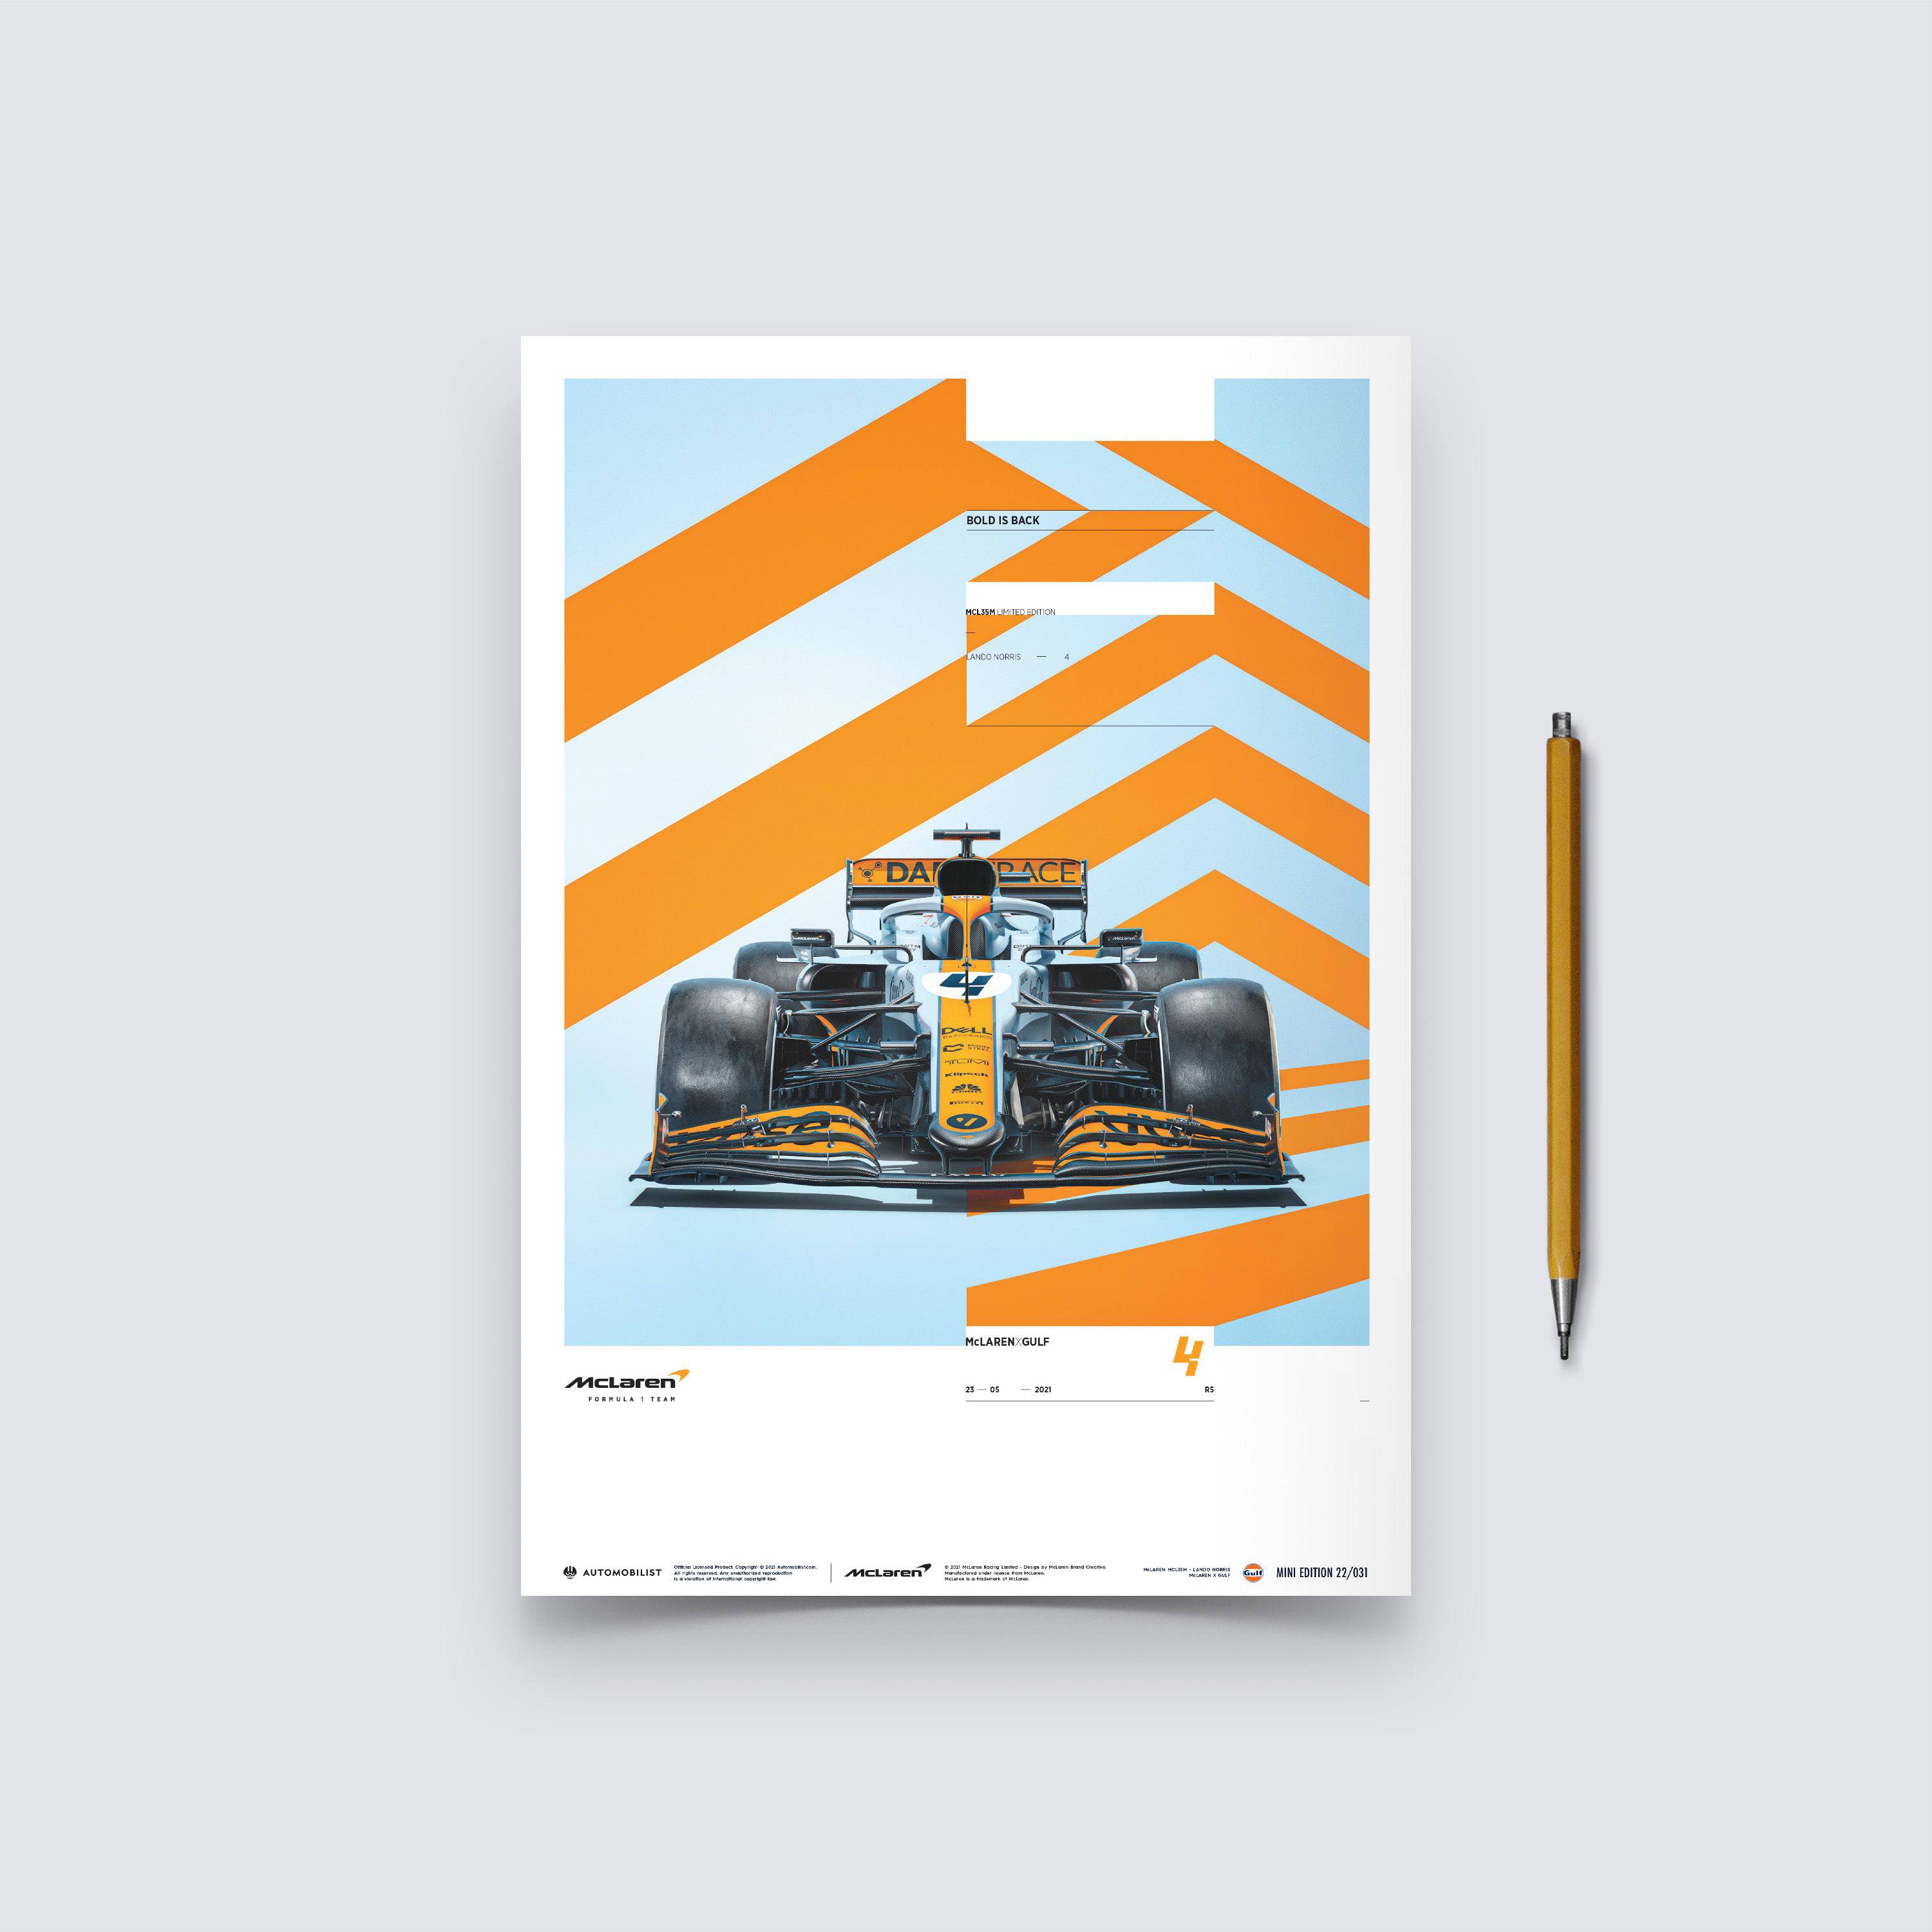 McLaren x Gulf - Lando Norris - 2021 - Automobilist